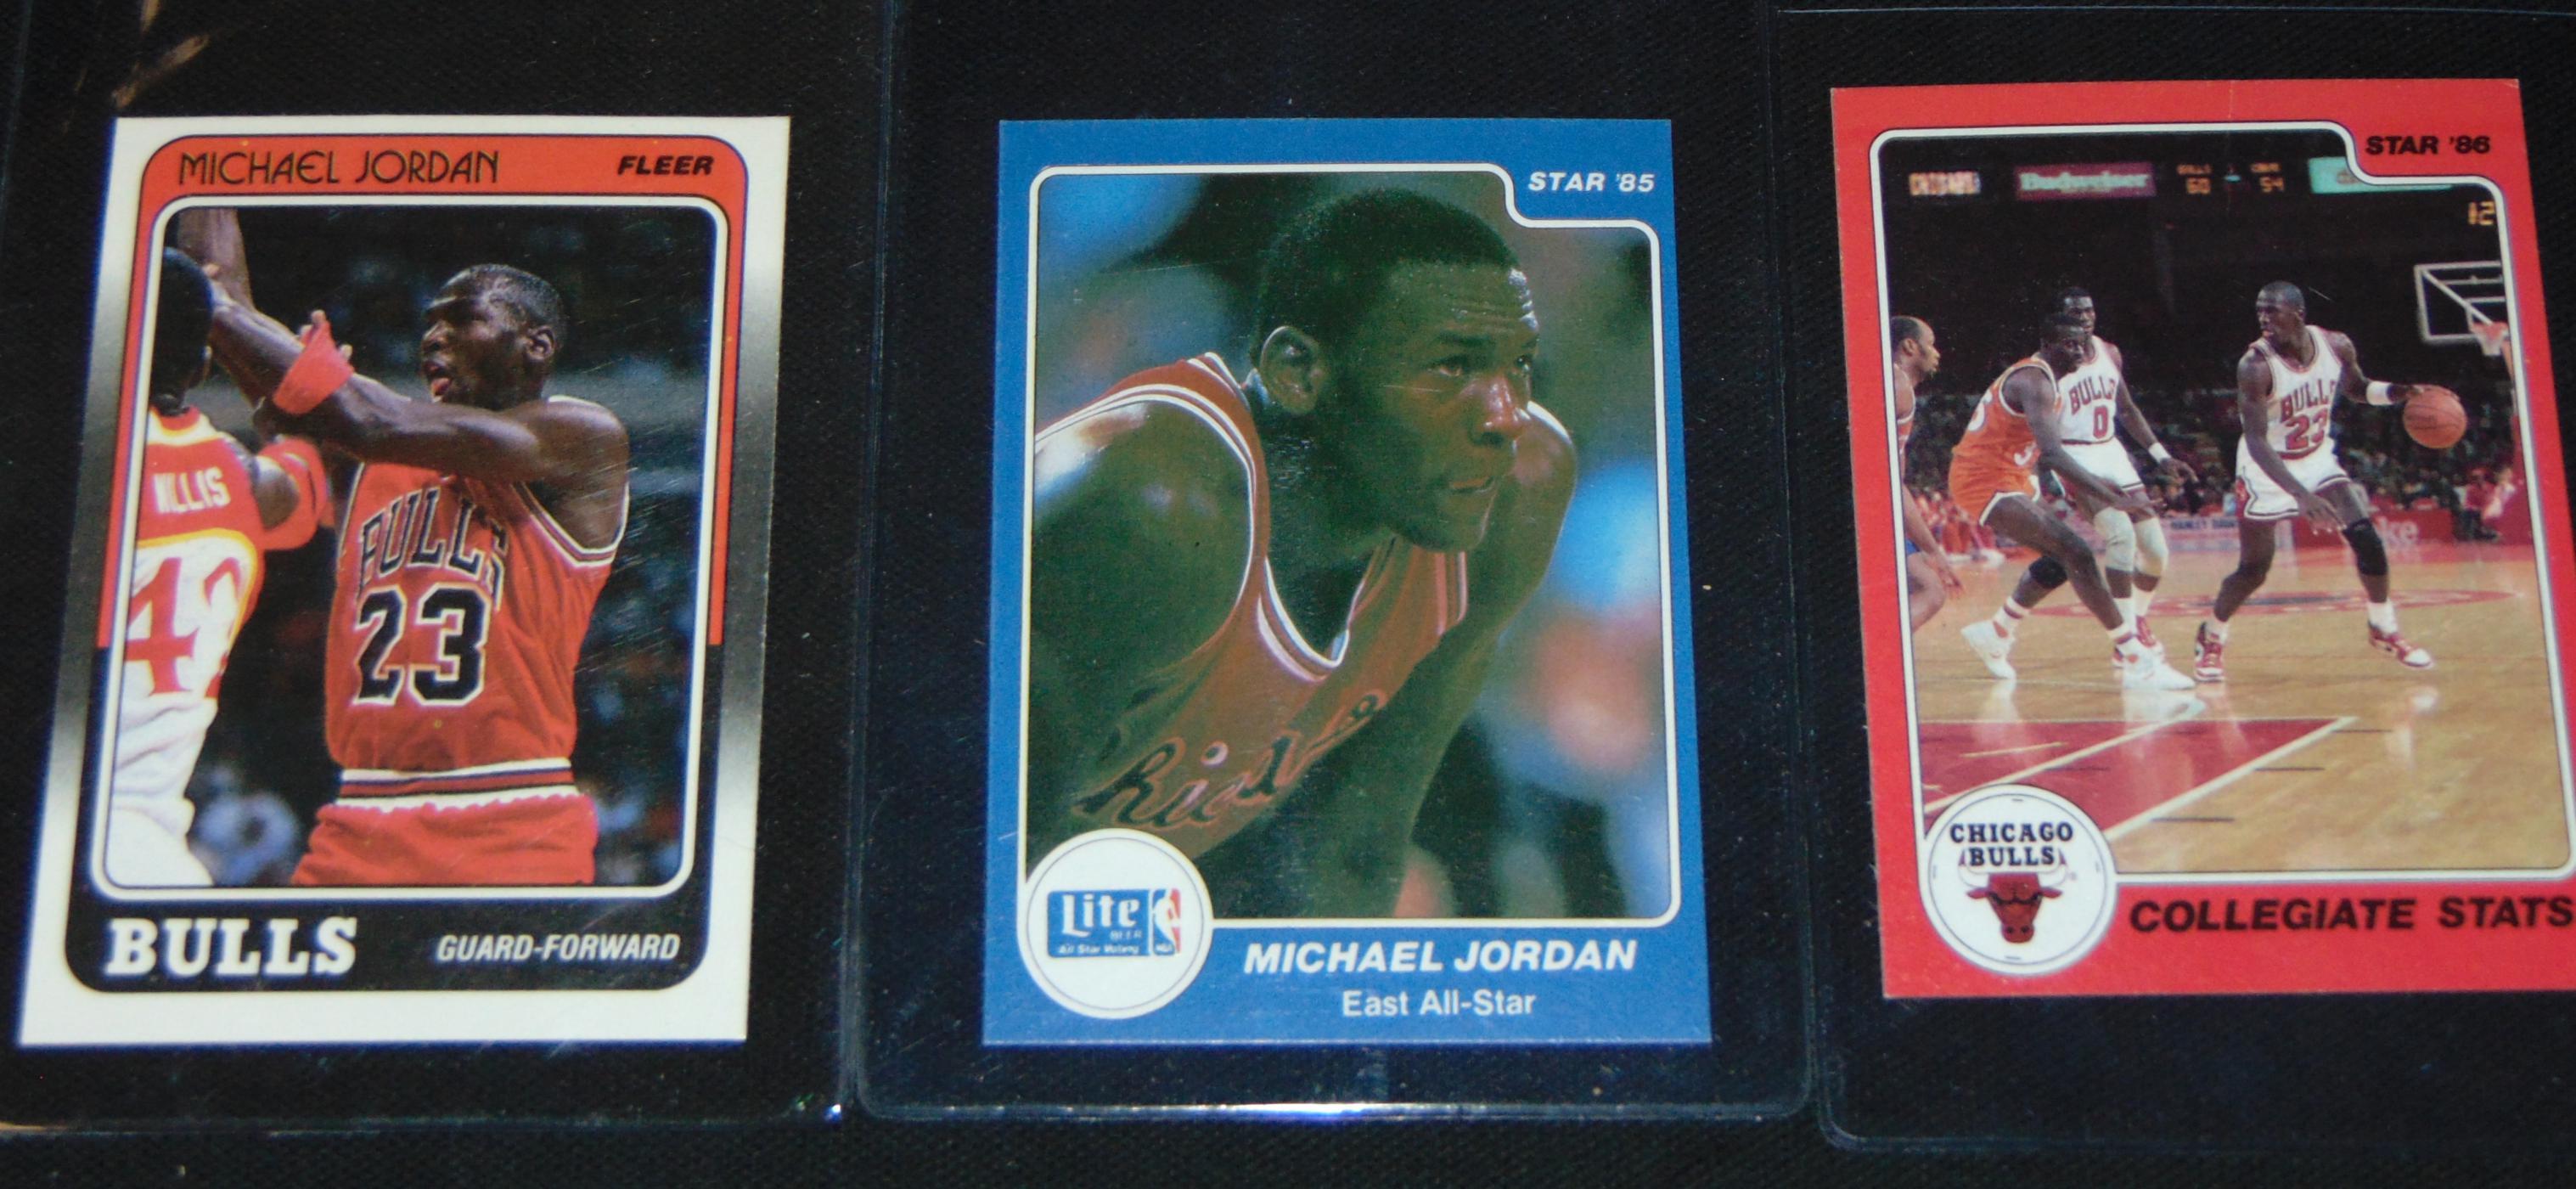 Michael Jordan Card.